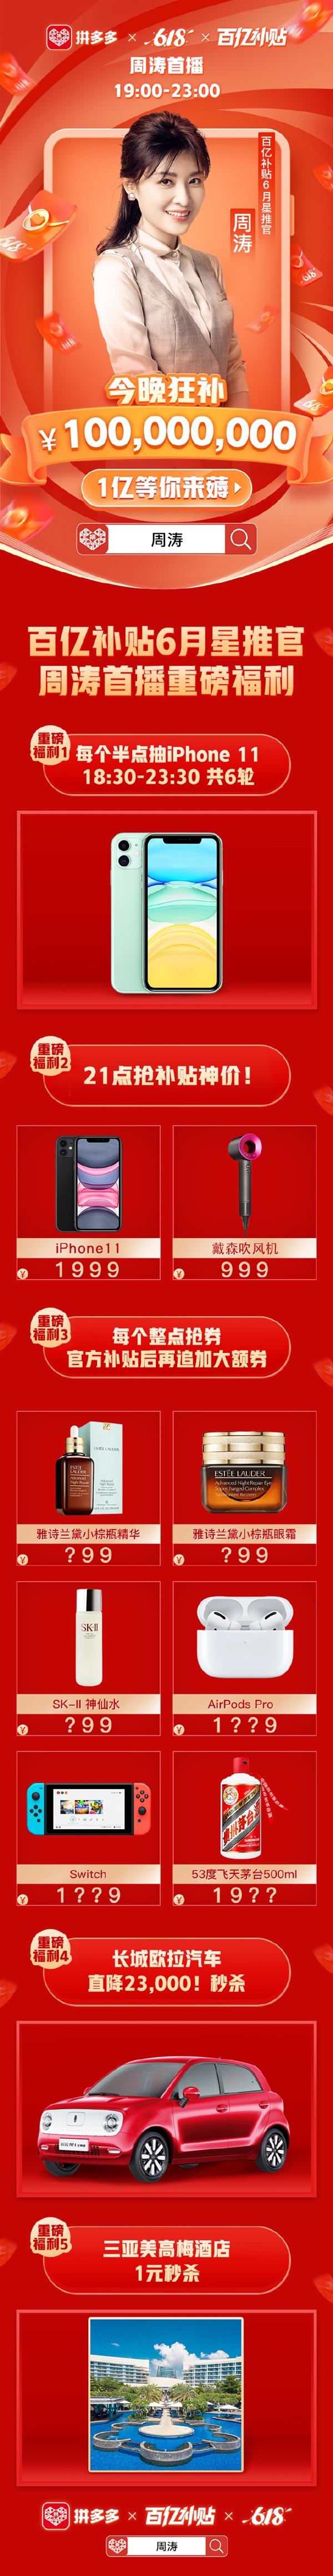 拼多多宣布周涛出任“明星推荐官” ：1999元买iPhone 11